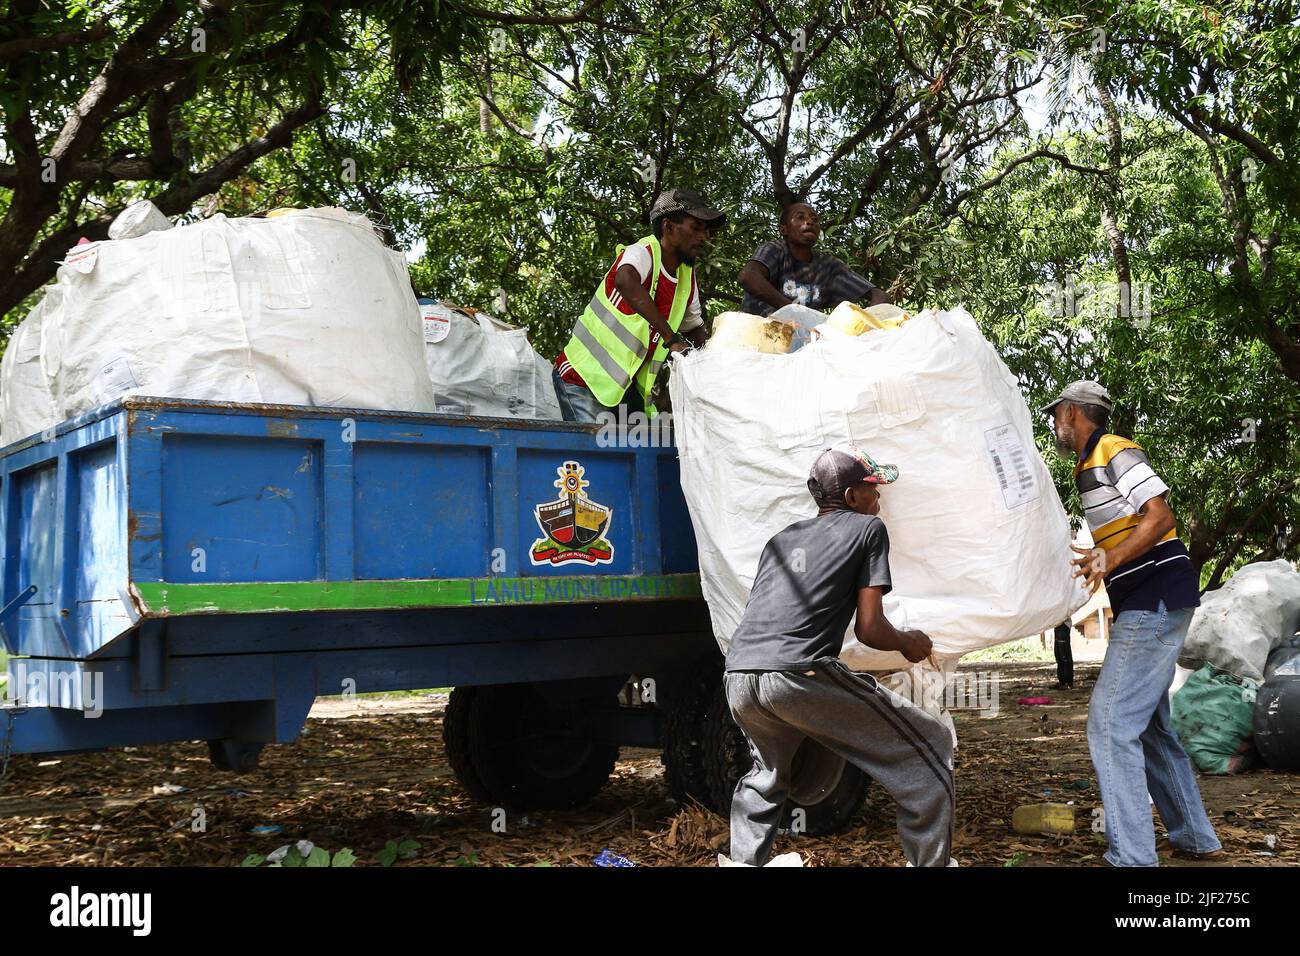 Los miembros de un grupo ambientalista comunitario, Weka Lamu Safi (Mantener Lamu Limpio), cargan en un remolque de tractor una semana de recolección de residuos plásticos recolectados dentro de la isla de Lamu antes de venderlos a la organización FlipFlopi para su reciclaje. La Organización FlipFlopi en 2019 construyó un velero casi enteramente de residuos plásticos reciclados recolectados en las orillas del Océano Índico. La contaminación causada por las actividades humanas ha afectado negativamente a los océanos. El Presidente de Kenia, Uhuru Kenyatta, en su discurso durante la conferencia oceánica en curso en Lisboa, Portugal, dijo que la contaminación plástica es enfermiza y contami Foto de stock